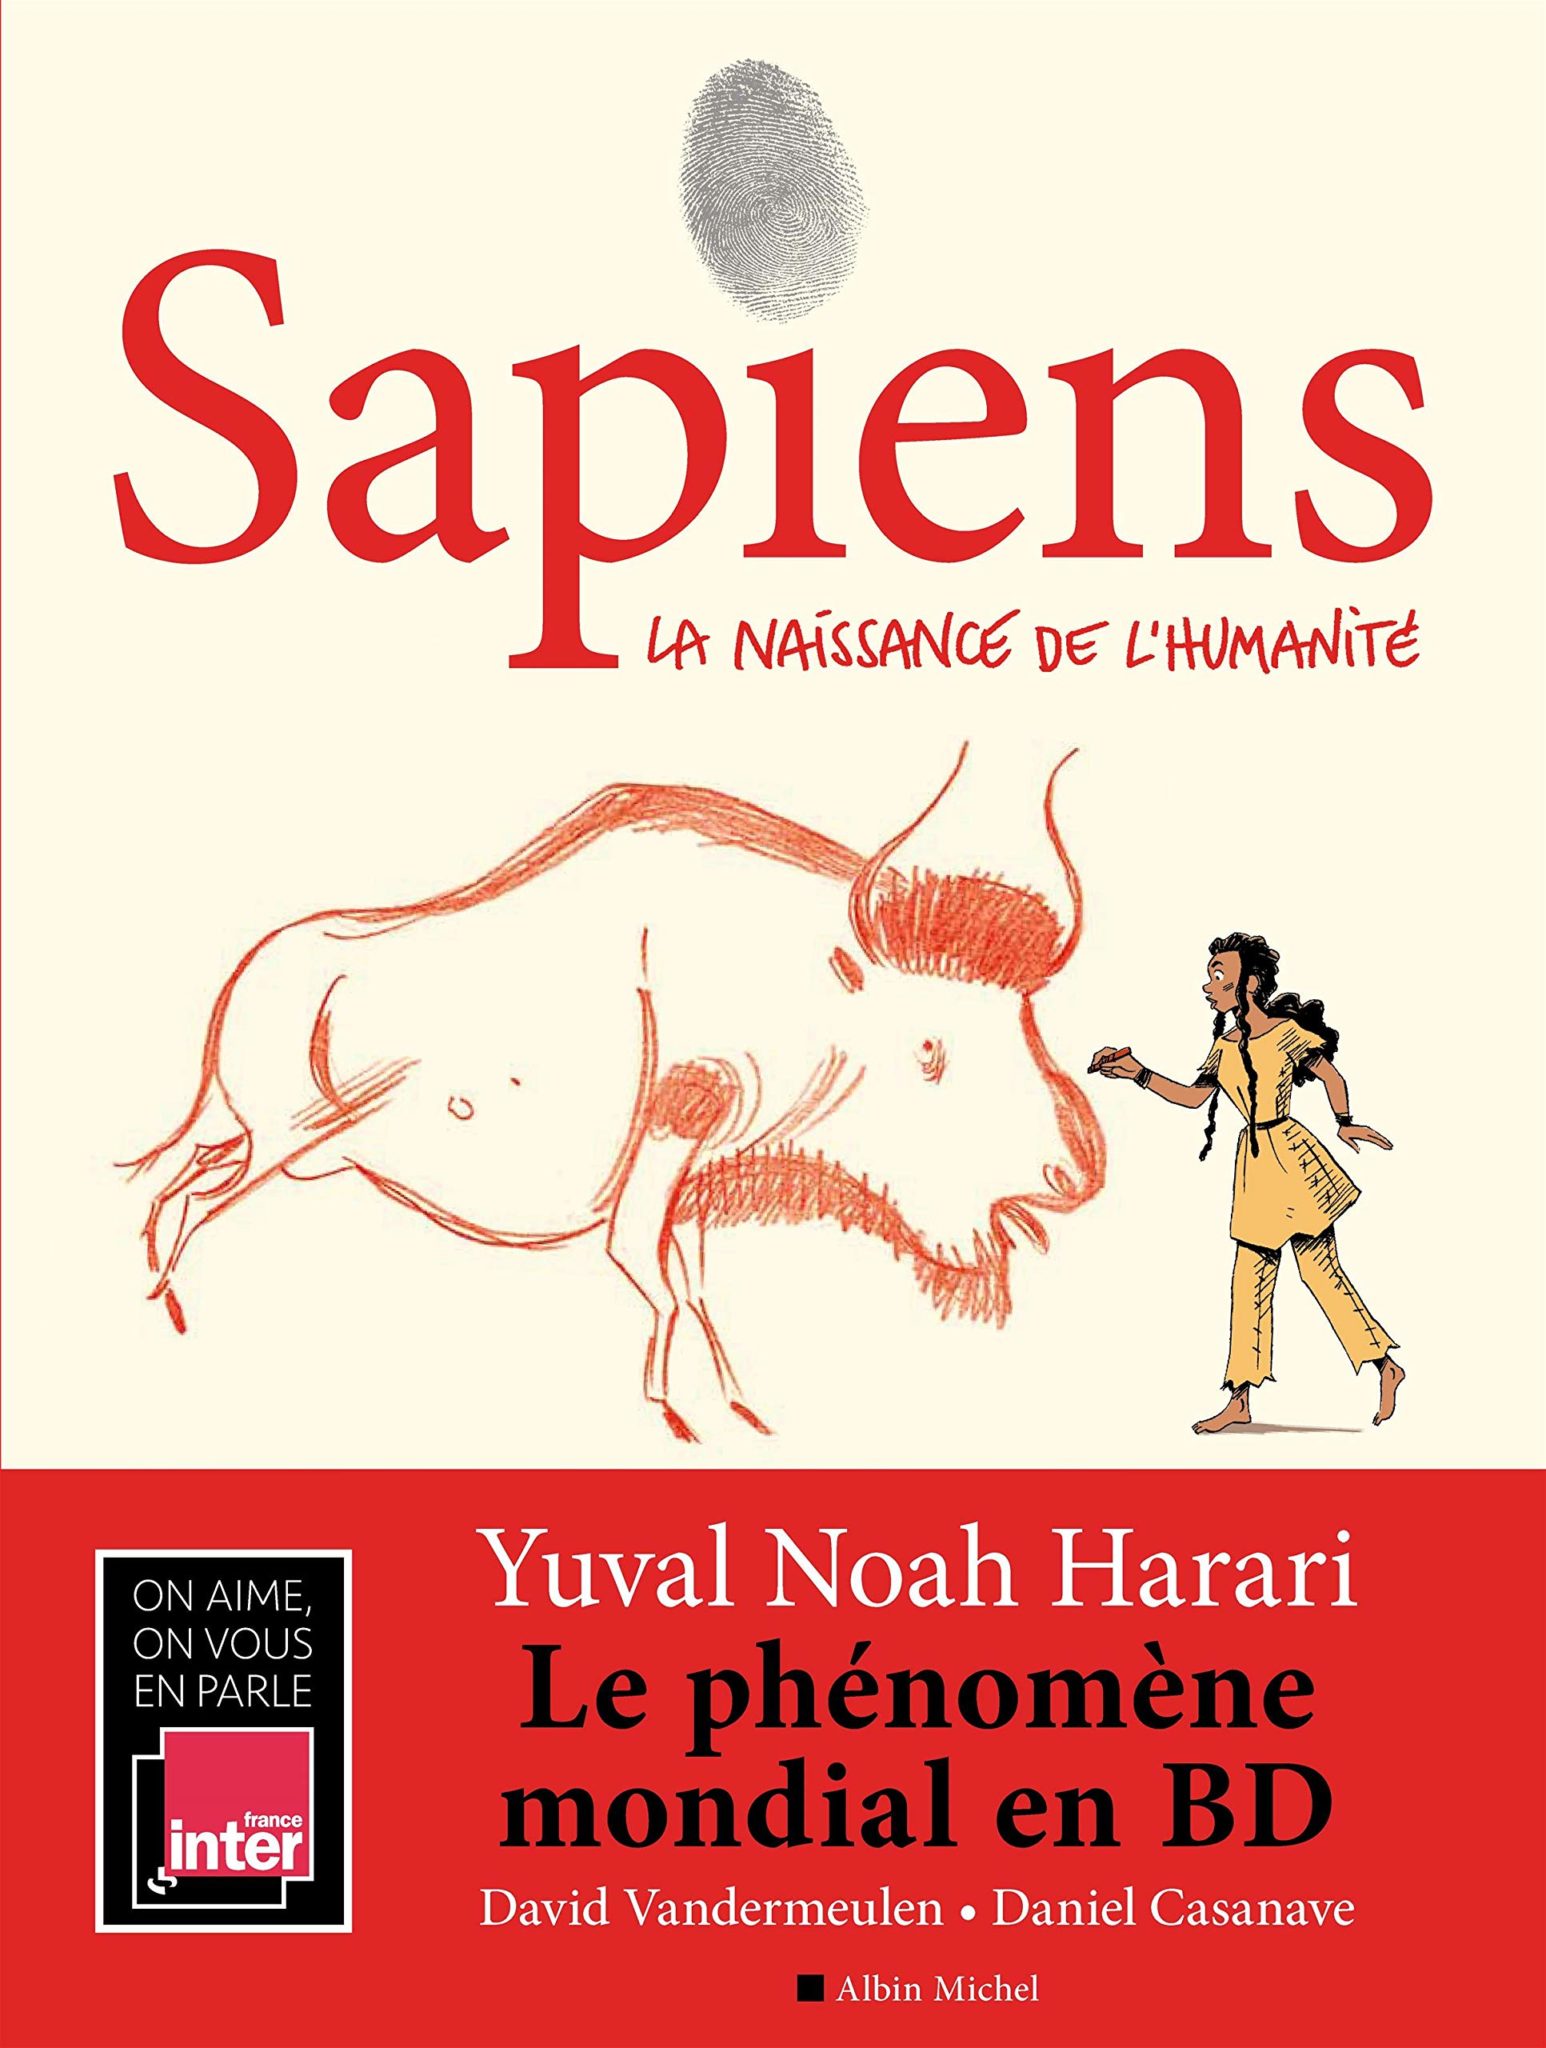 Sapiens by David Vandermeulen